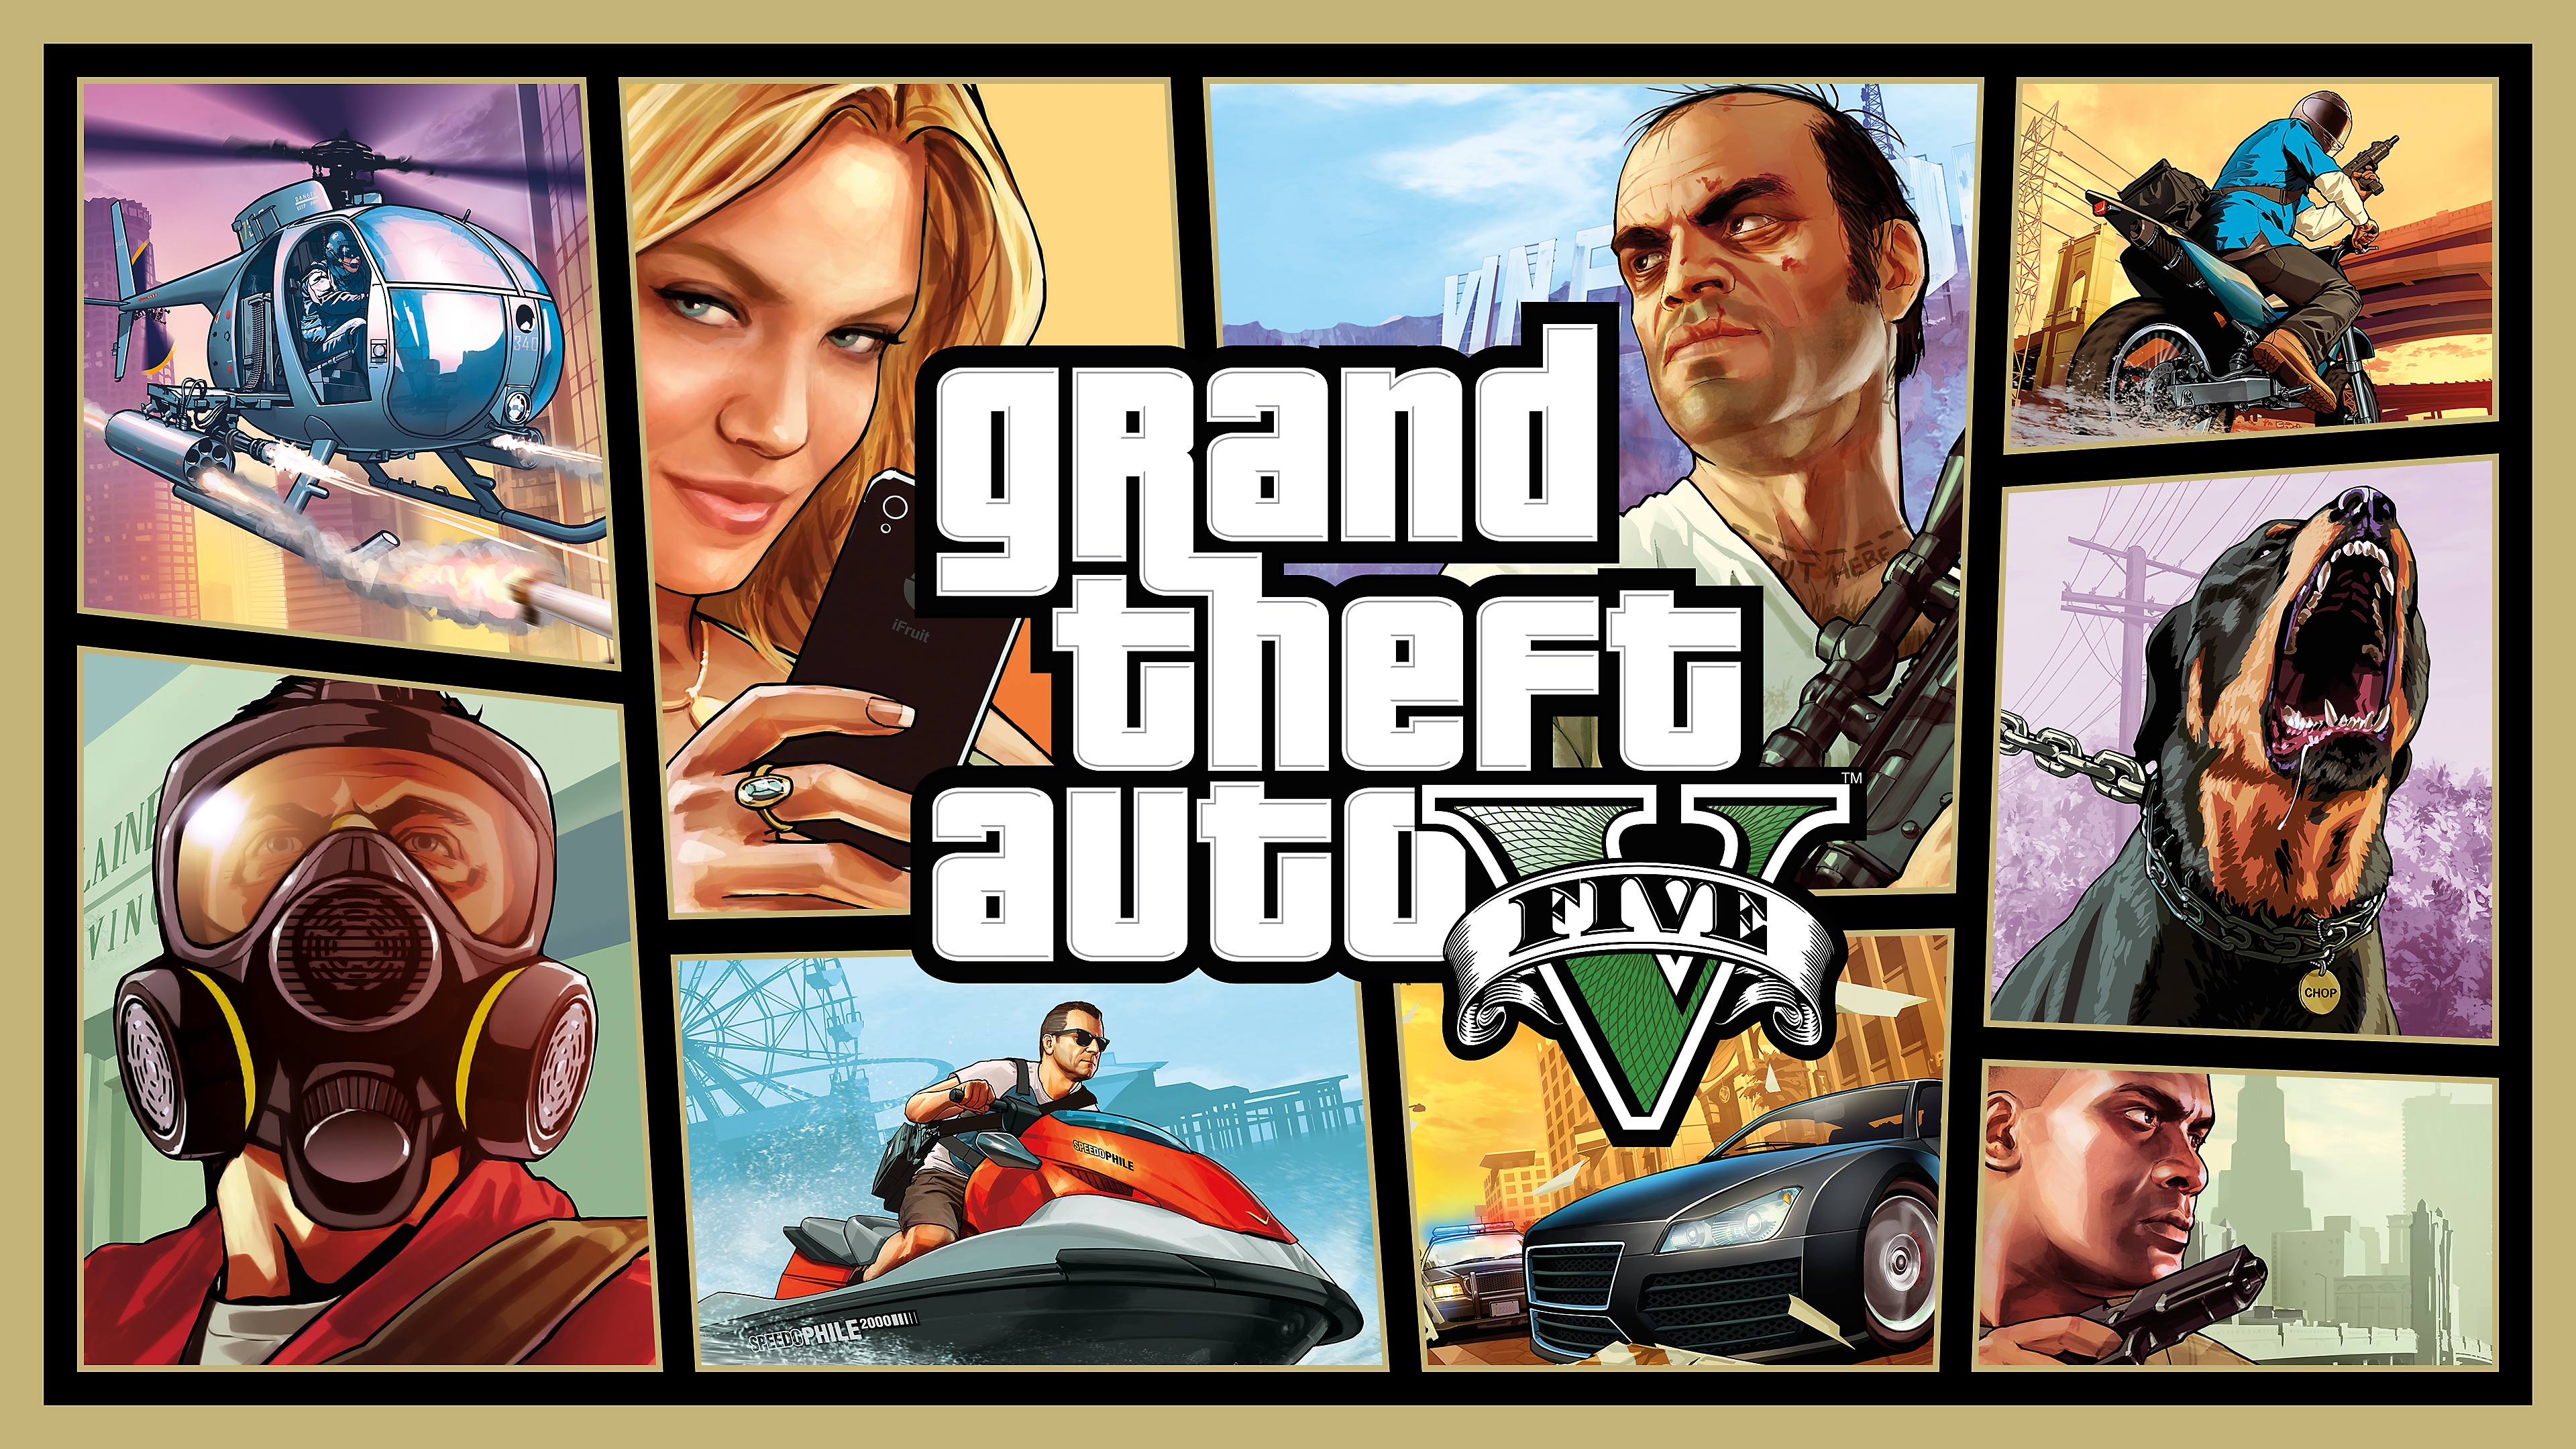 GTAV - Immagine principale della modalità storia che mostra un mix di immagini tra cui i protagonisti, un rottweiler che abbaia, una moto d'acqua, macchine e un elicottero.